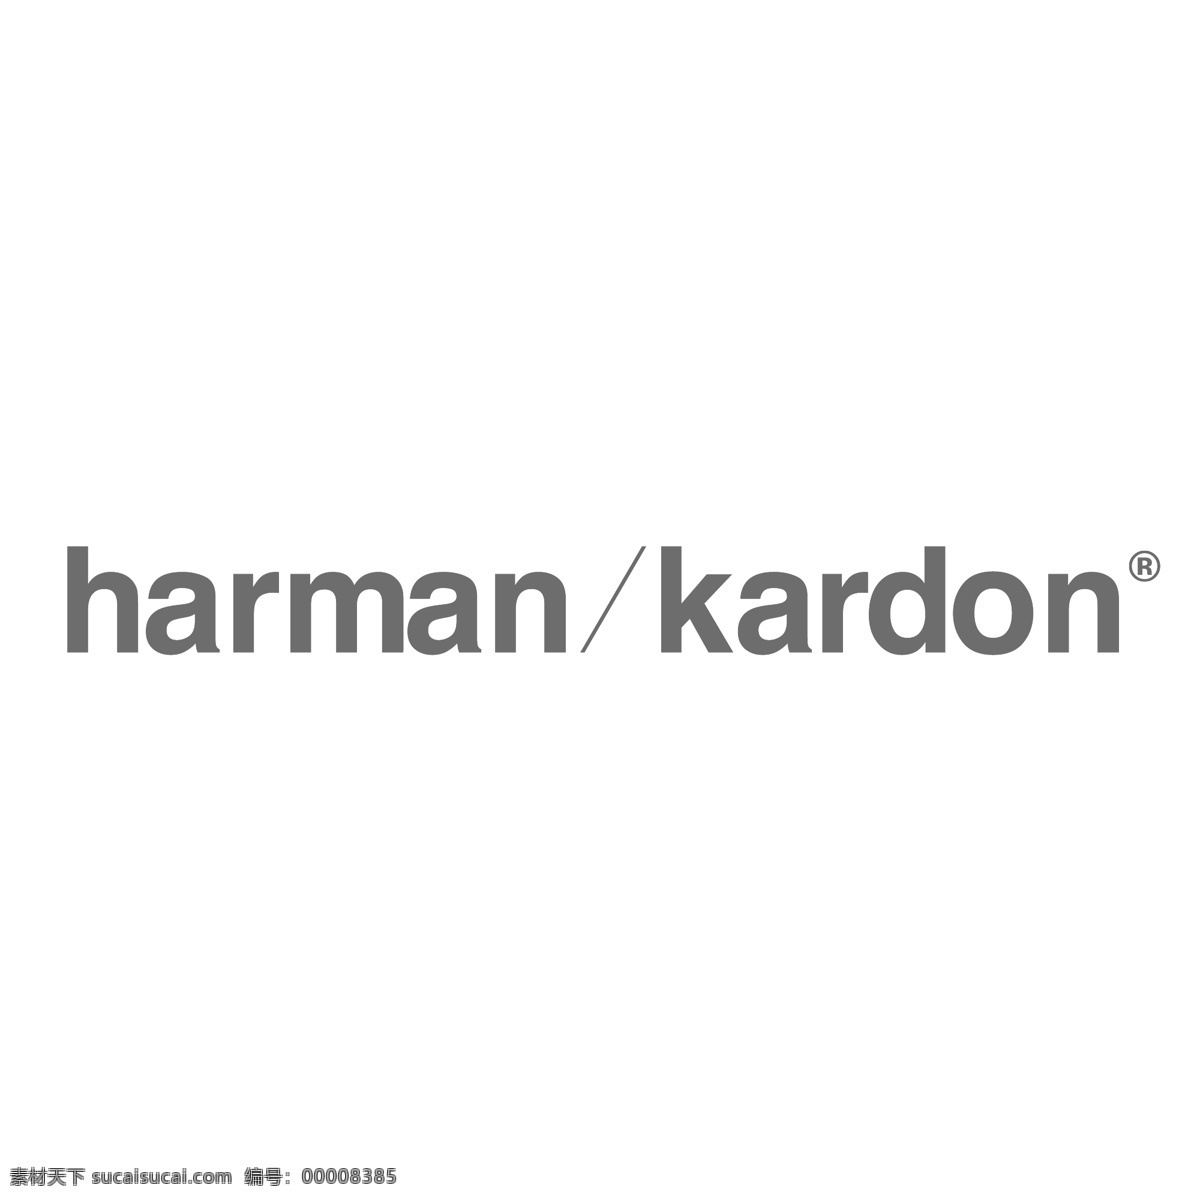 哈曼 卡顿 kardon 哈曼卡顿 矢量图 其他矢量图